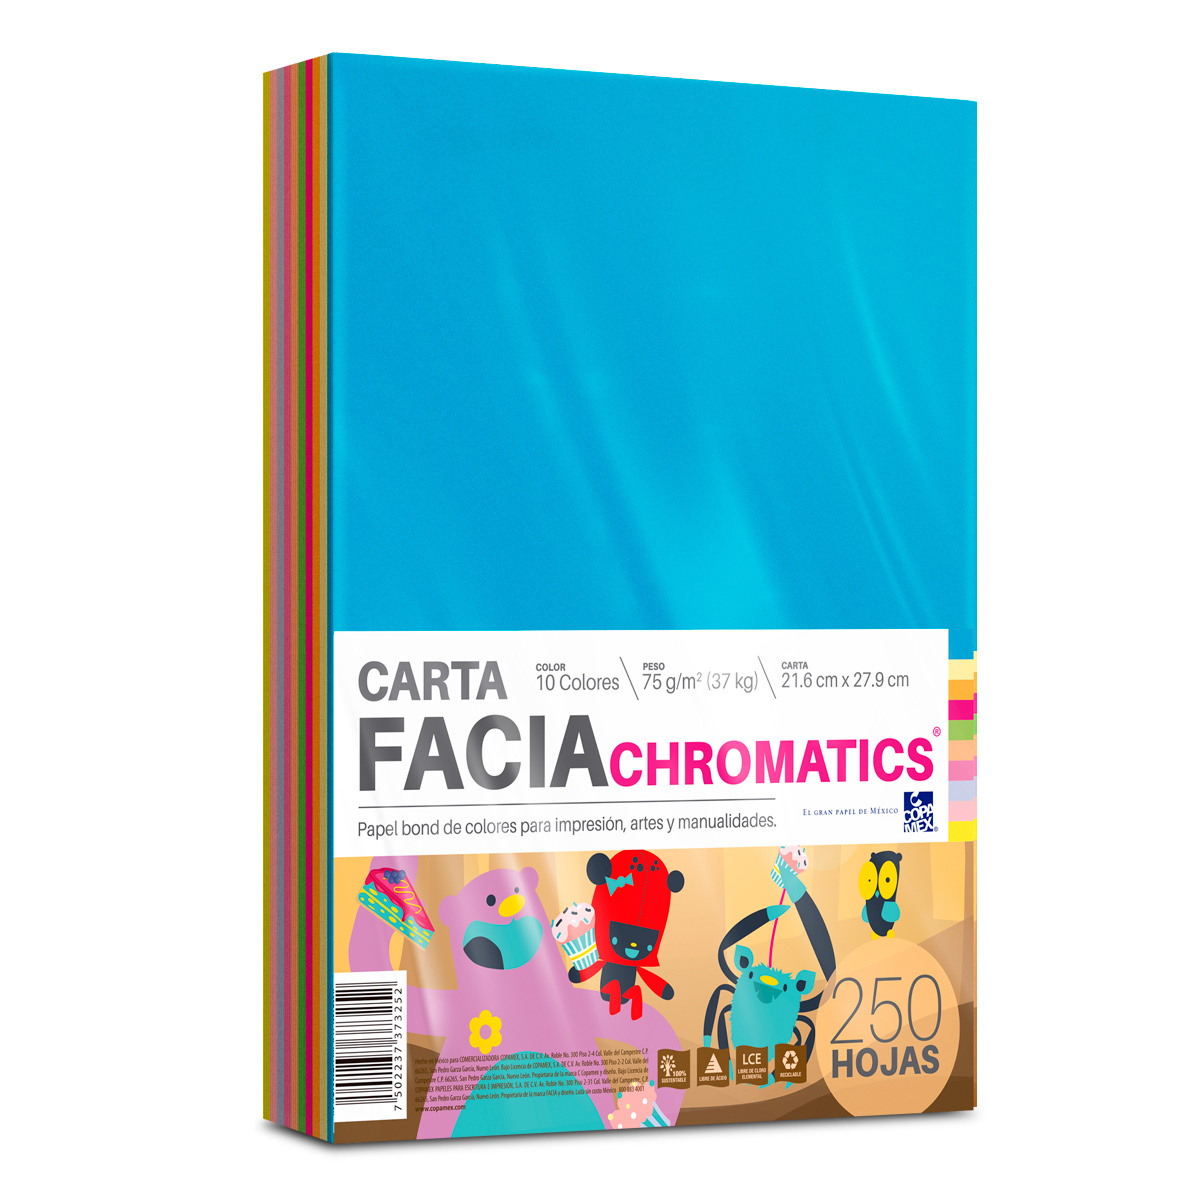 Hojas de Colores Facia Chromatics Paquete 250 hojas Carta Surtido 10  colores 75 gr | Office Depot Mexico